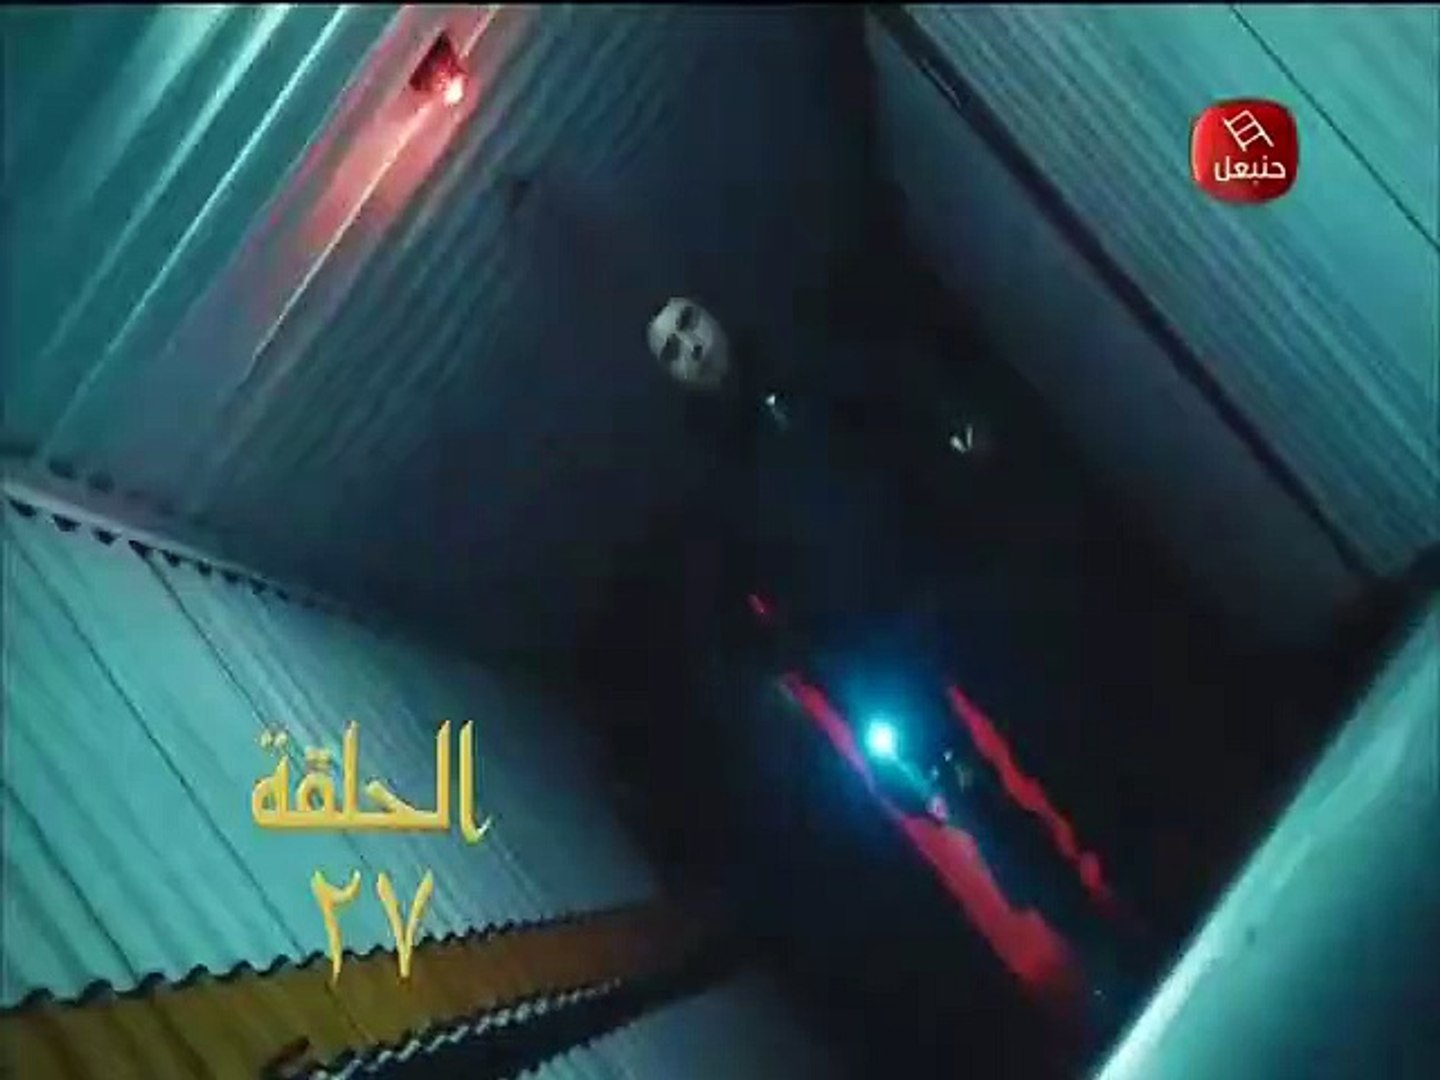 وادي الذئاب الجزء التاسع الحلقة 27 مدبلج عربي - فيديو Dailymotion